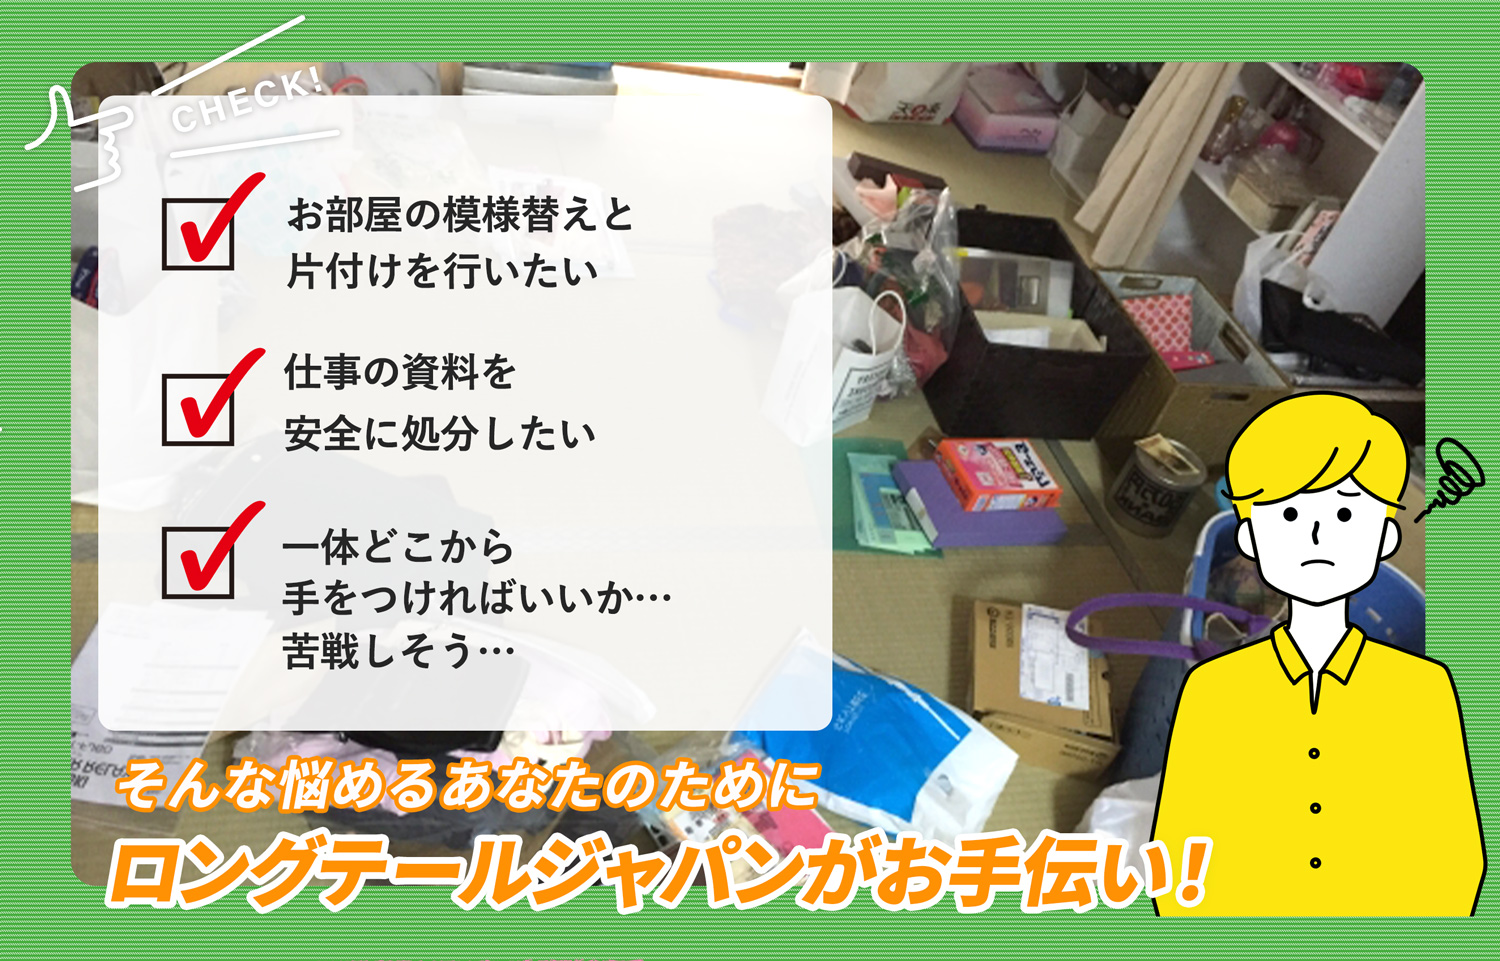 静岡市でお部屋の中から店舗、事務所、倉庫まで自分達で片付けられない場合はお部屋の片付け隊がやらせていただきます。